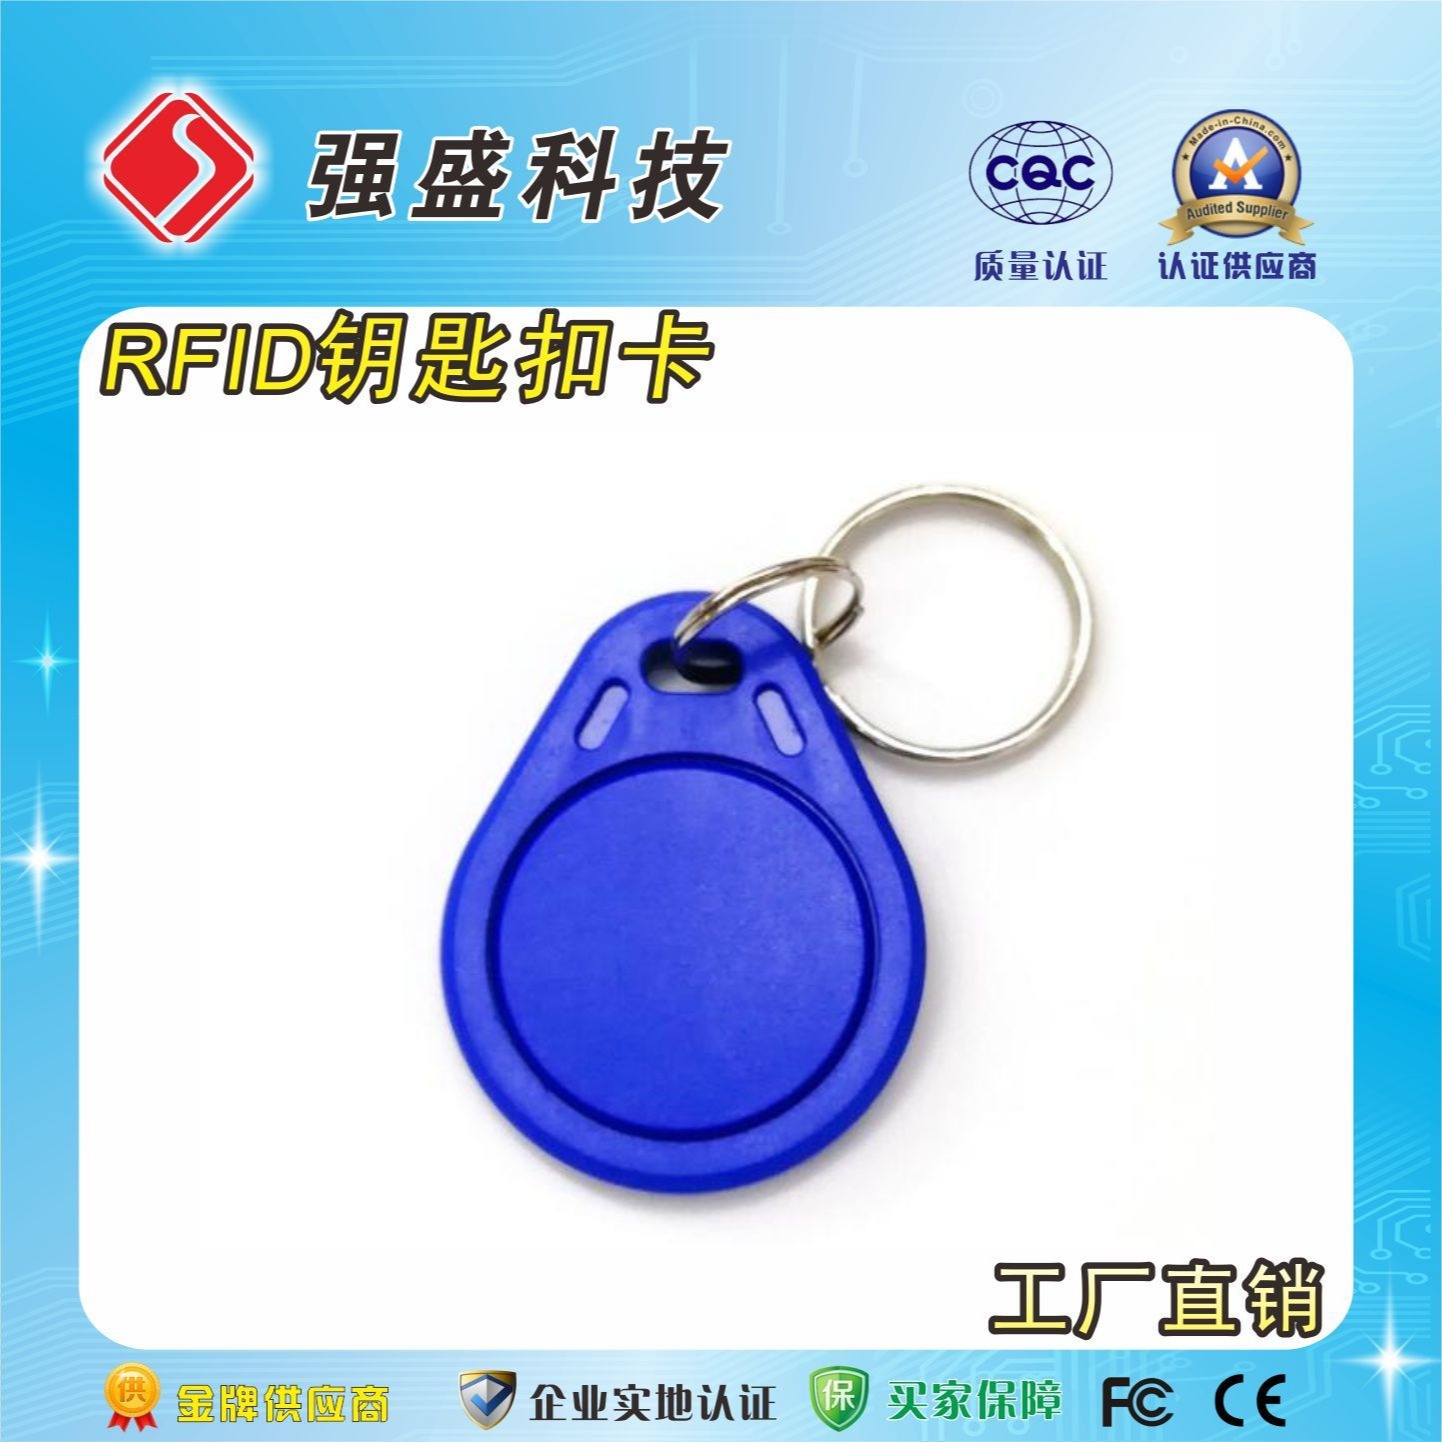 蓝色3号钥匙扣卡 ID钥匙扣 电梯卡 TK4100芯片卡钥匙扣图片